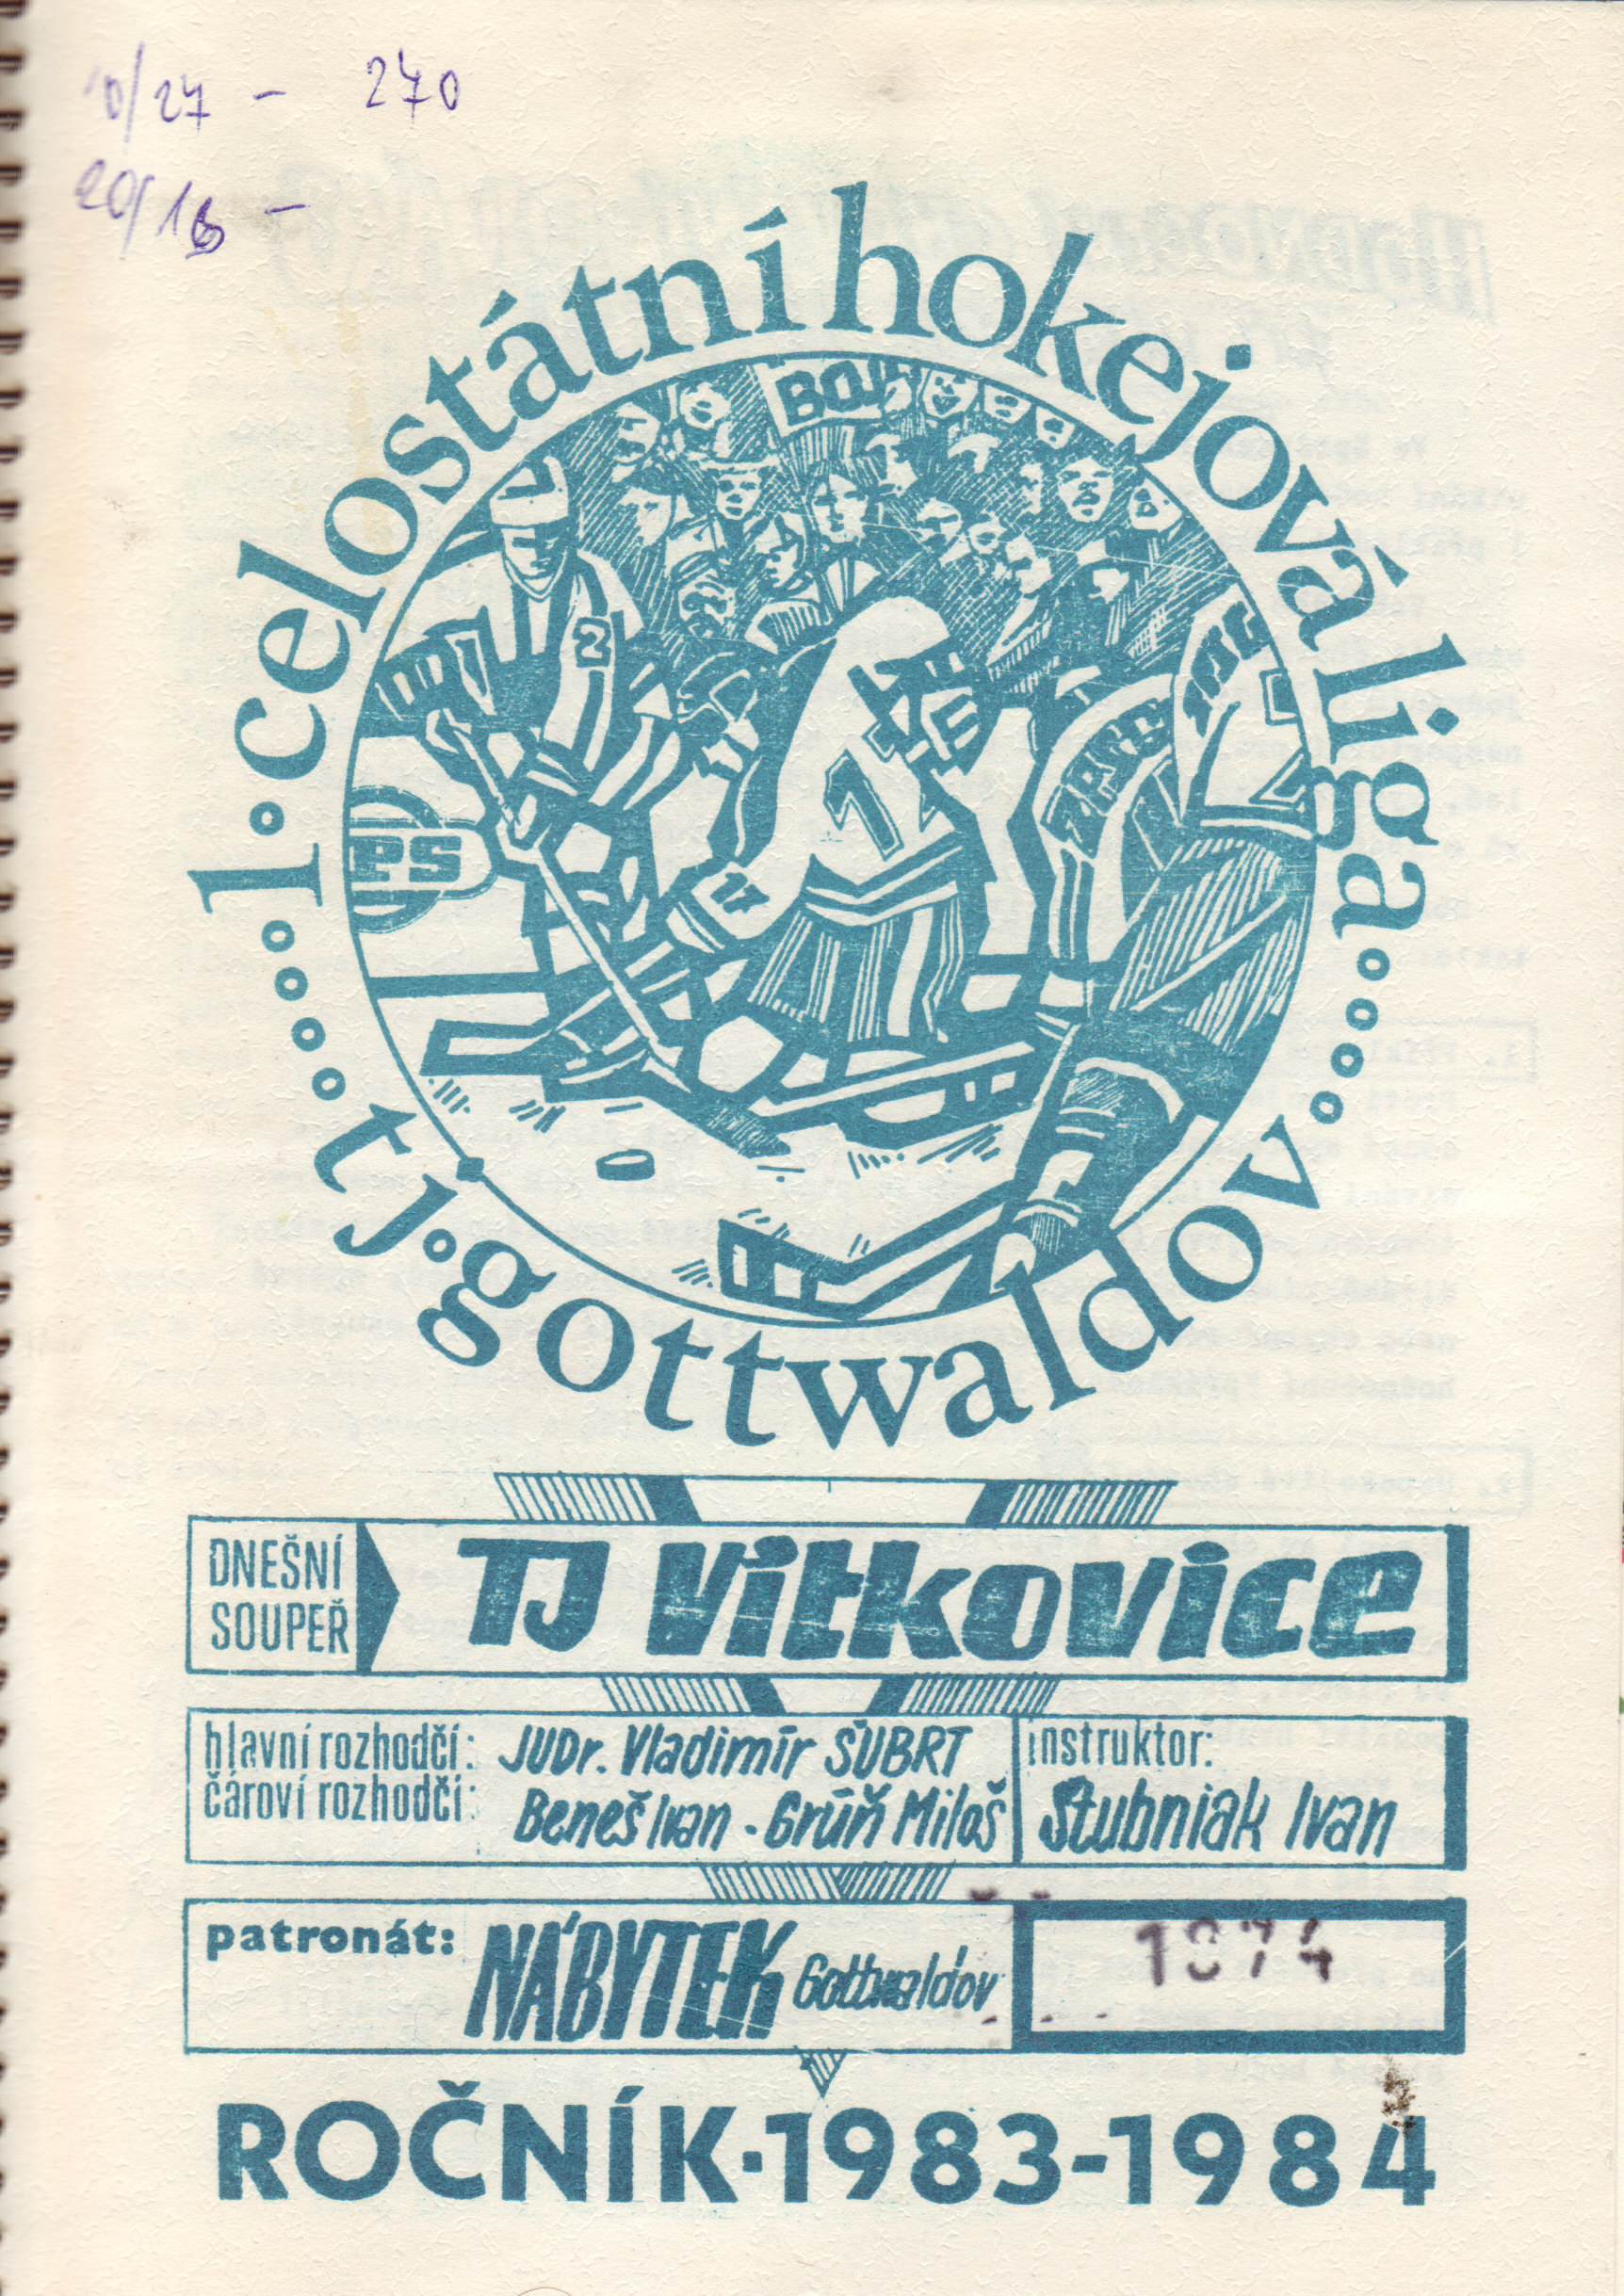 zápasový program1983-1984.jpg